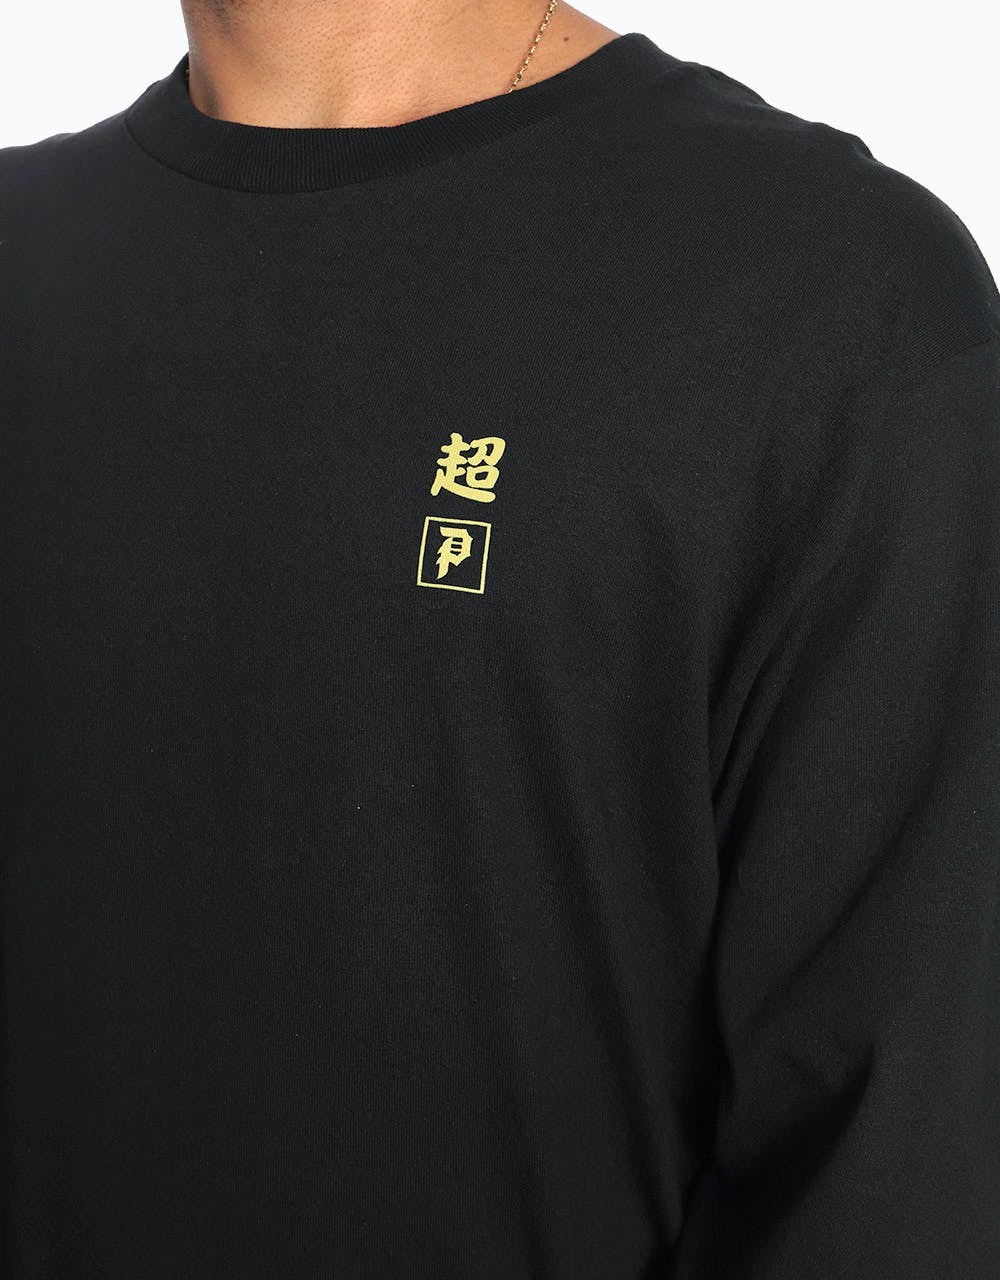 Primitive x Dragon Ball Super Golden Frieza L/S T-Shirt - Black